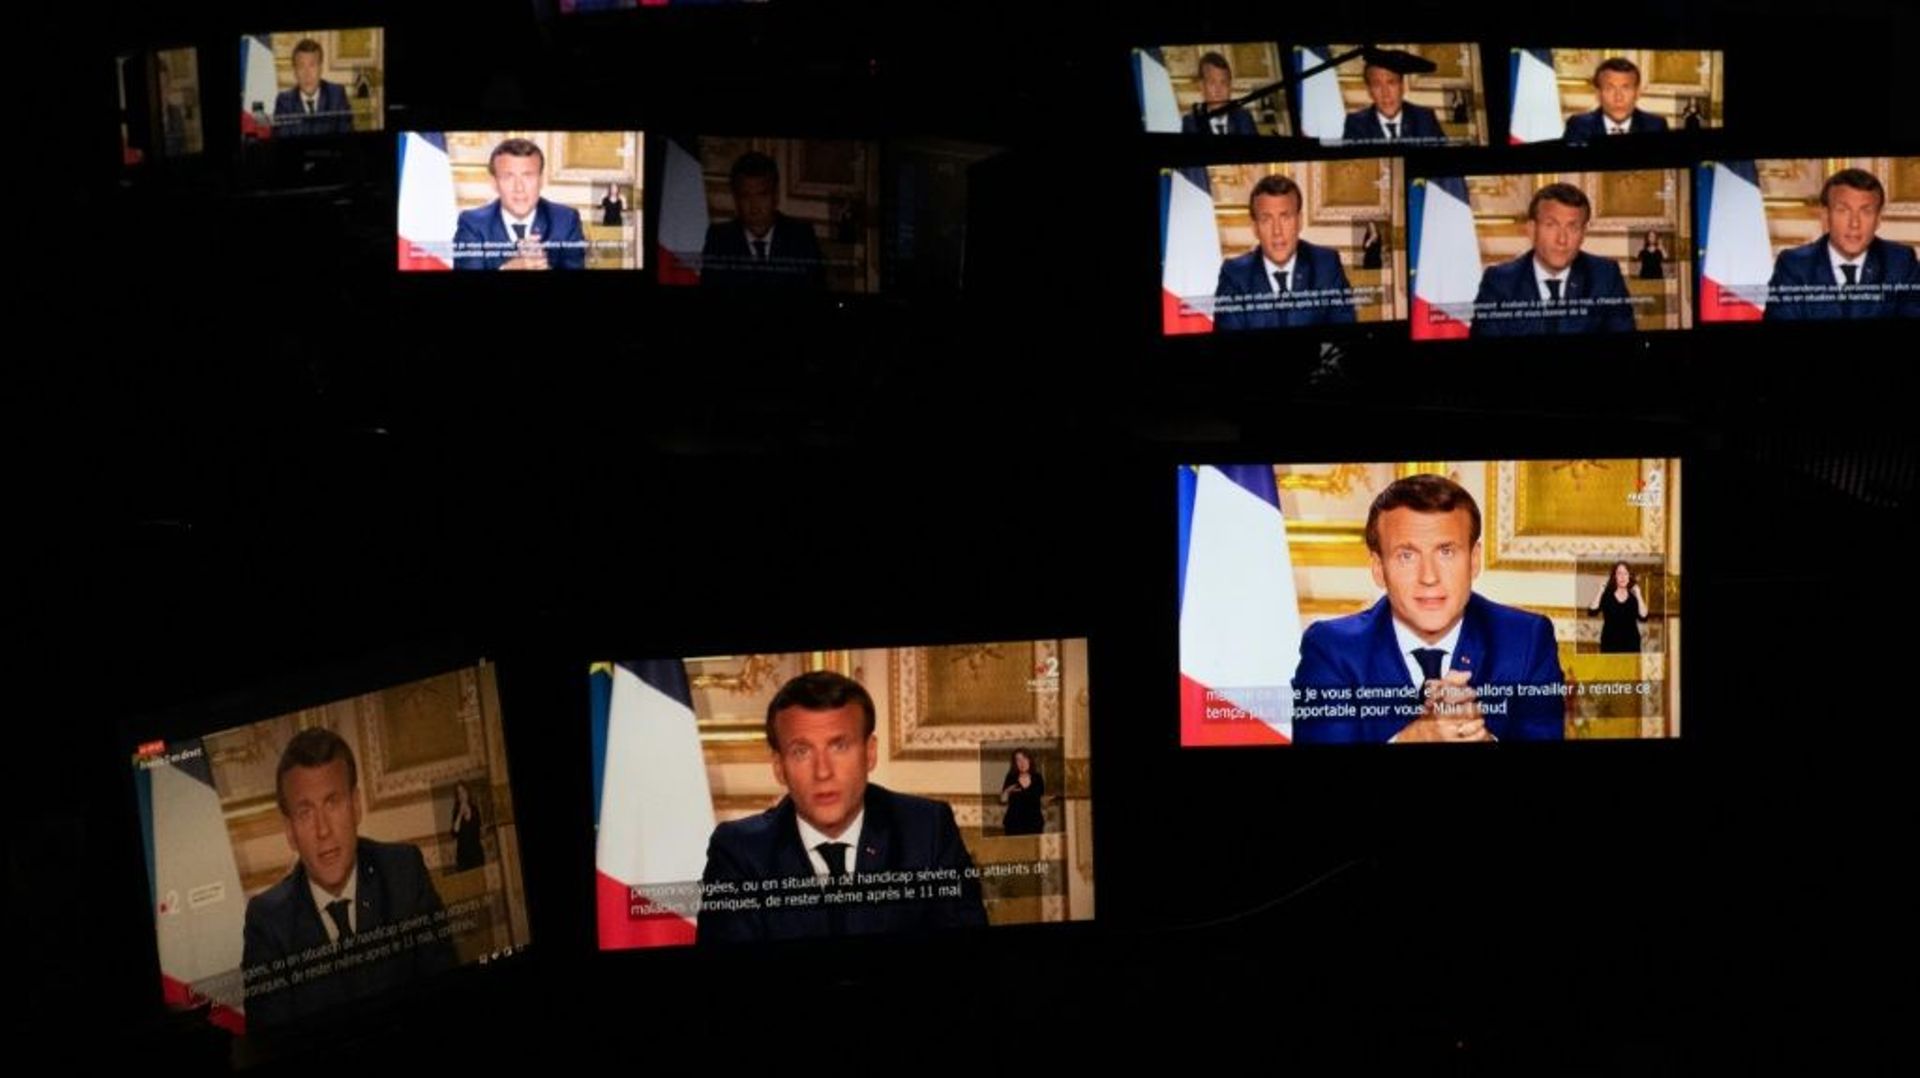 Le président Emmanuel Macron sur des écrans lors de son allocution du 13 avril 2020 à Paris